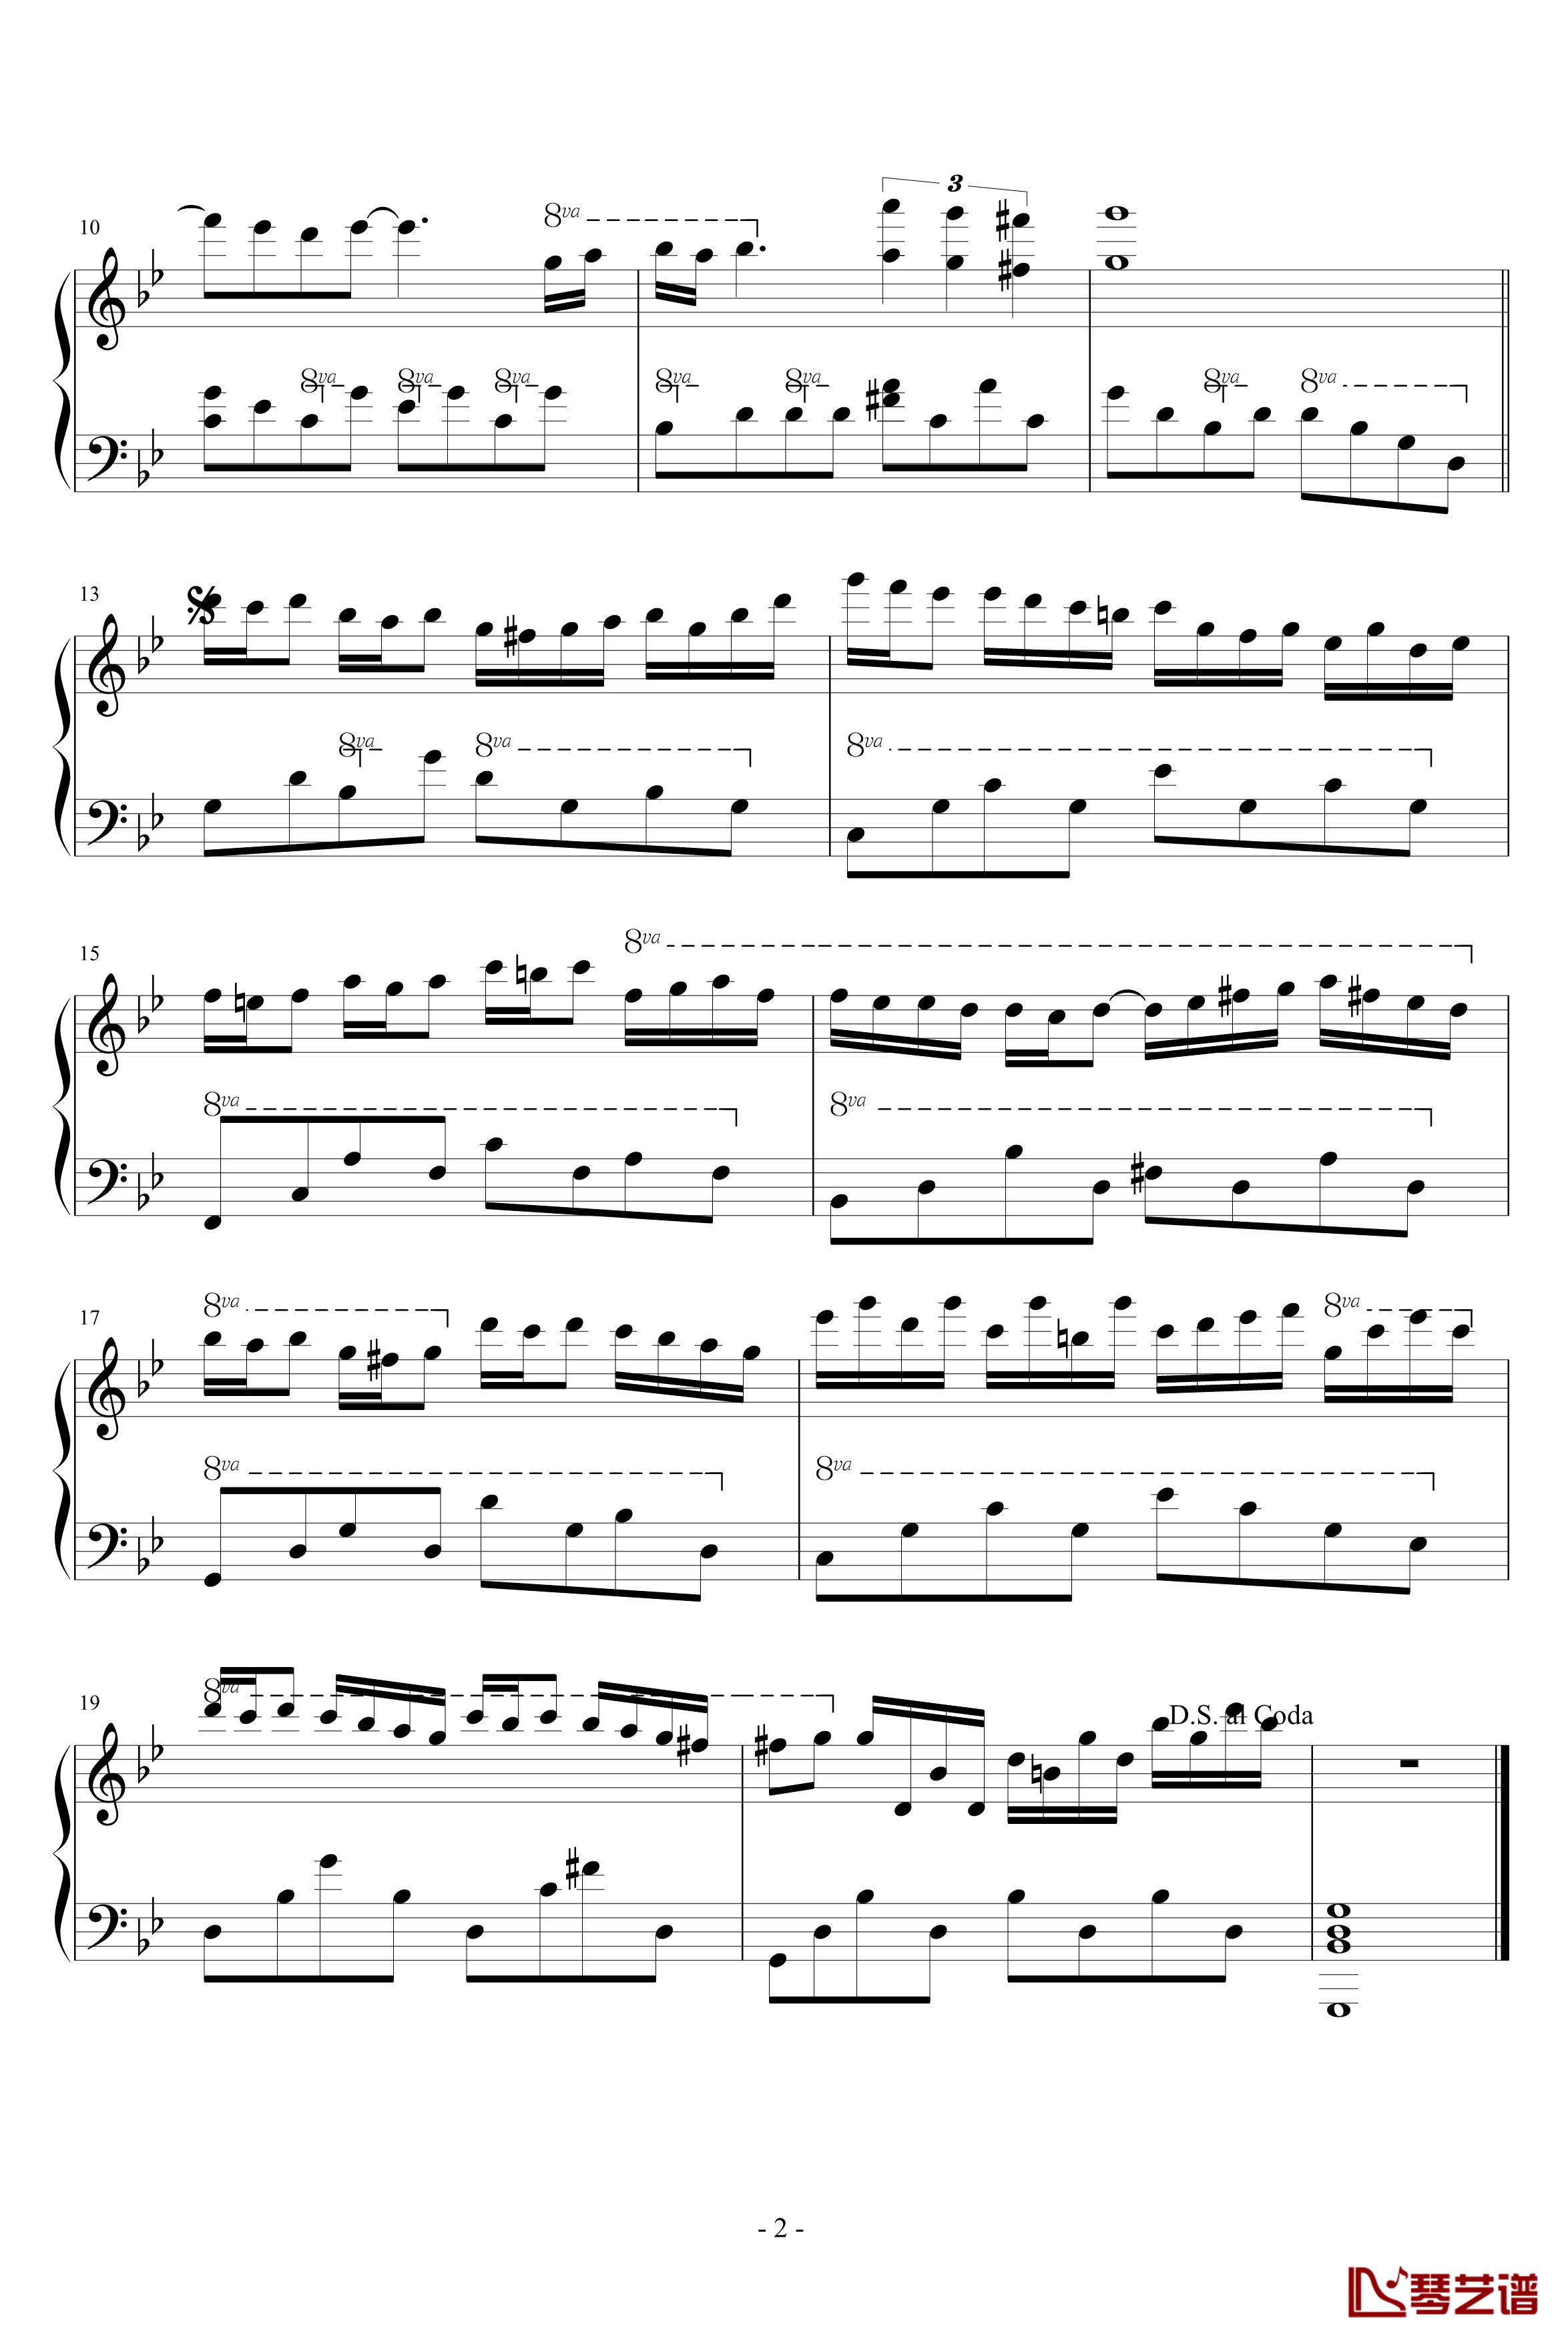 星空钢琴谱-简化版-克莱德曼2